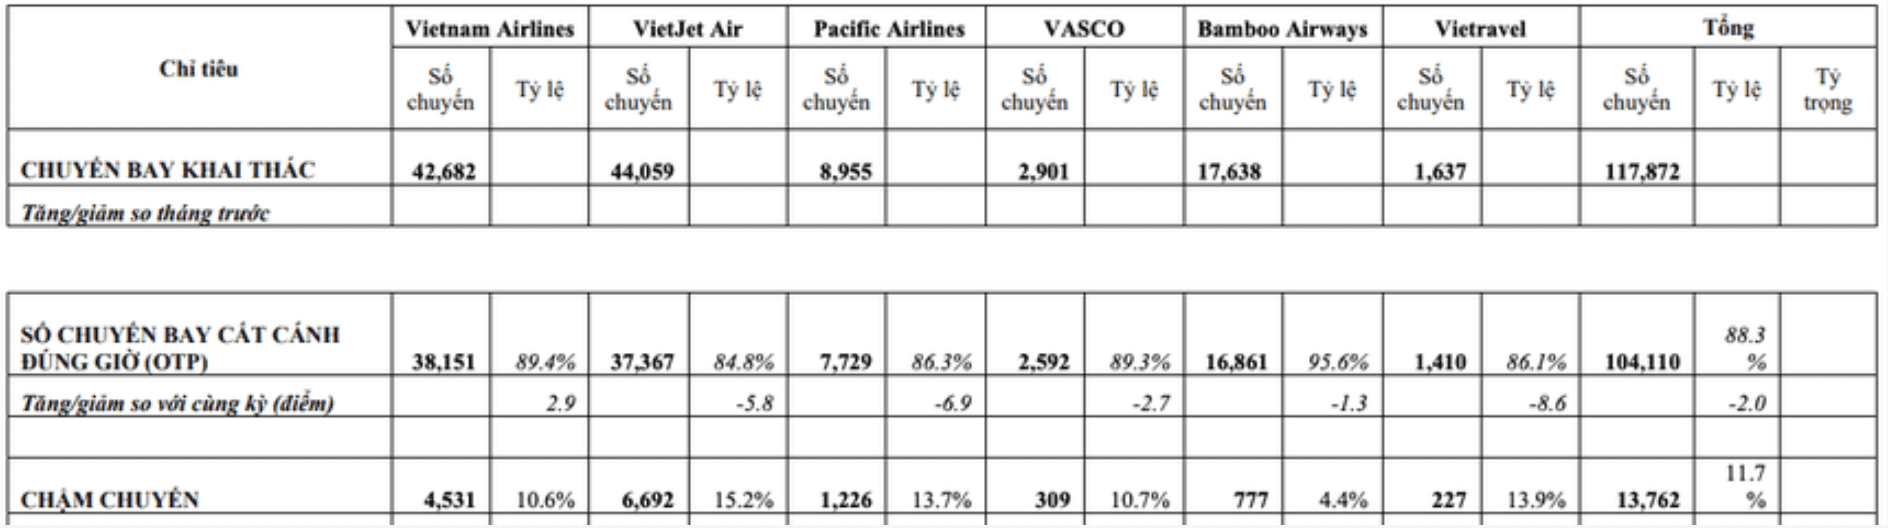 Chi tiết về số chuyến bay chậm chuyến bay các hãng hàng không giai đoạn 5 tháng đầu năm 2023 (nguồn: Cục Hàng không Việt Nam)